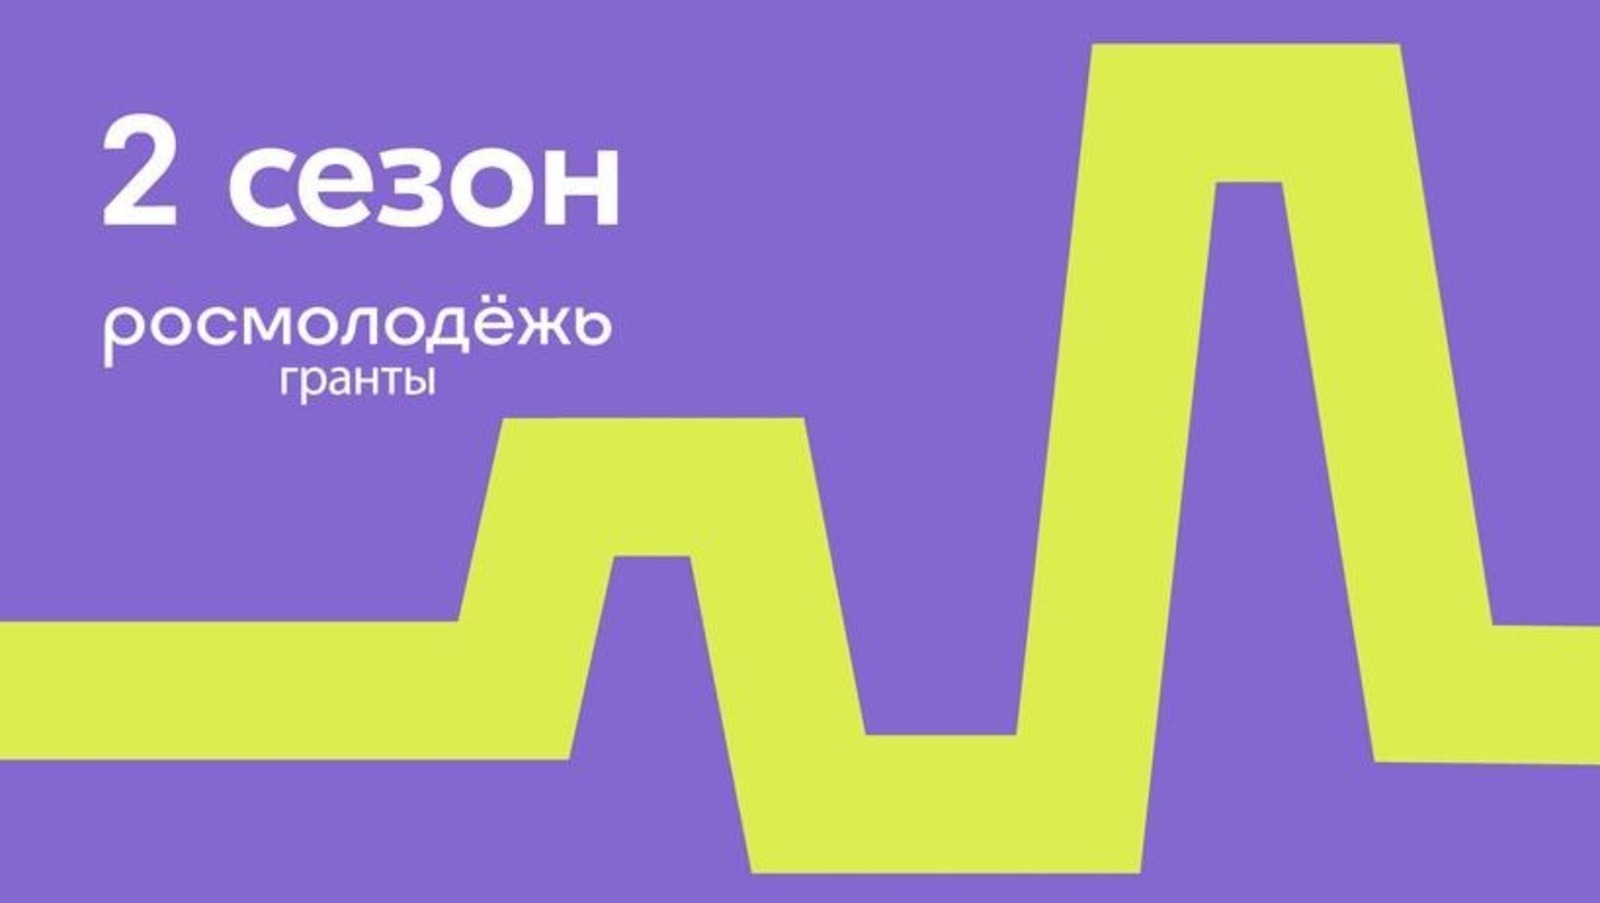 Молодые люди Башкортостана могут претендовать на грант до 1 млн. рублей на реализацию социально значимых проектов